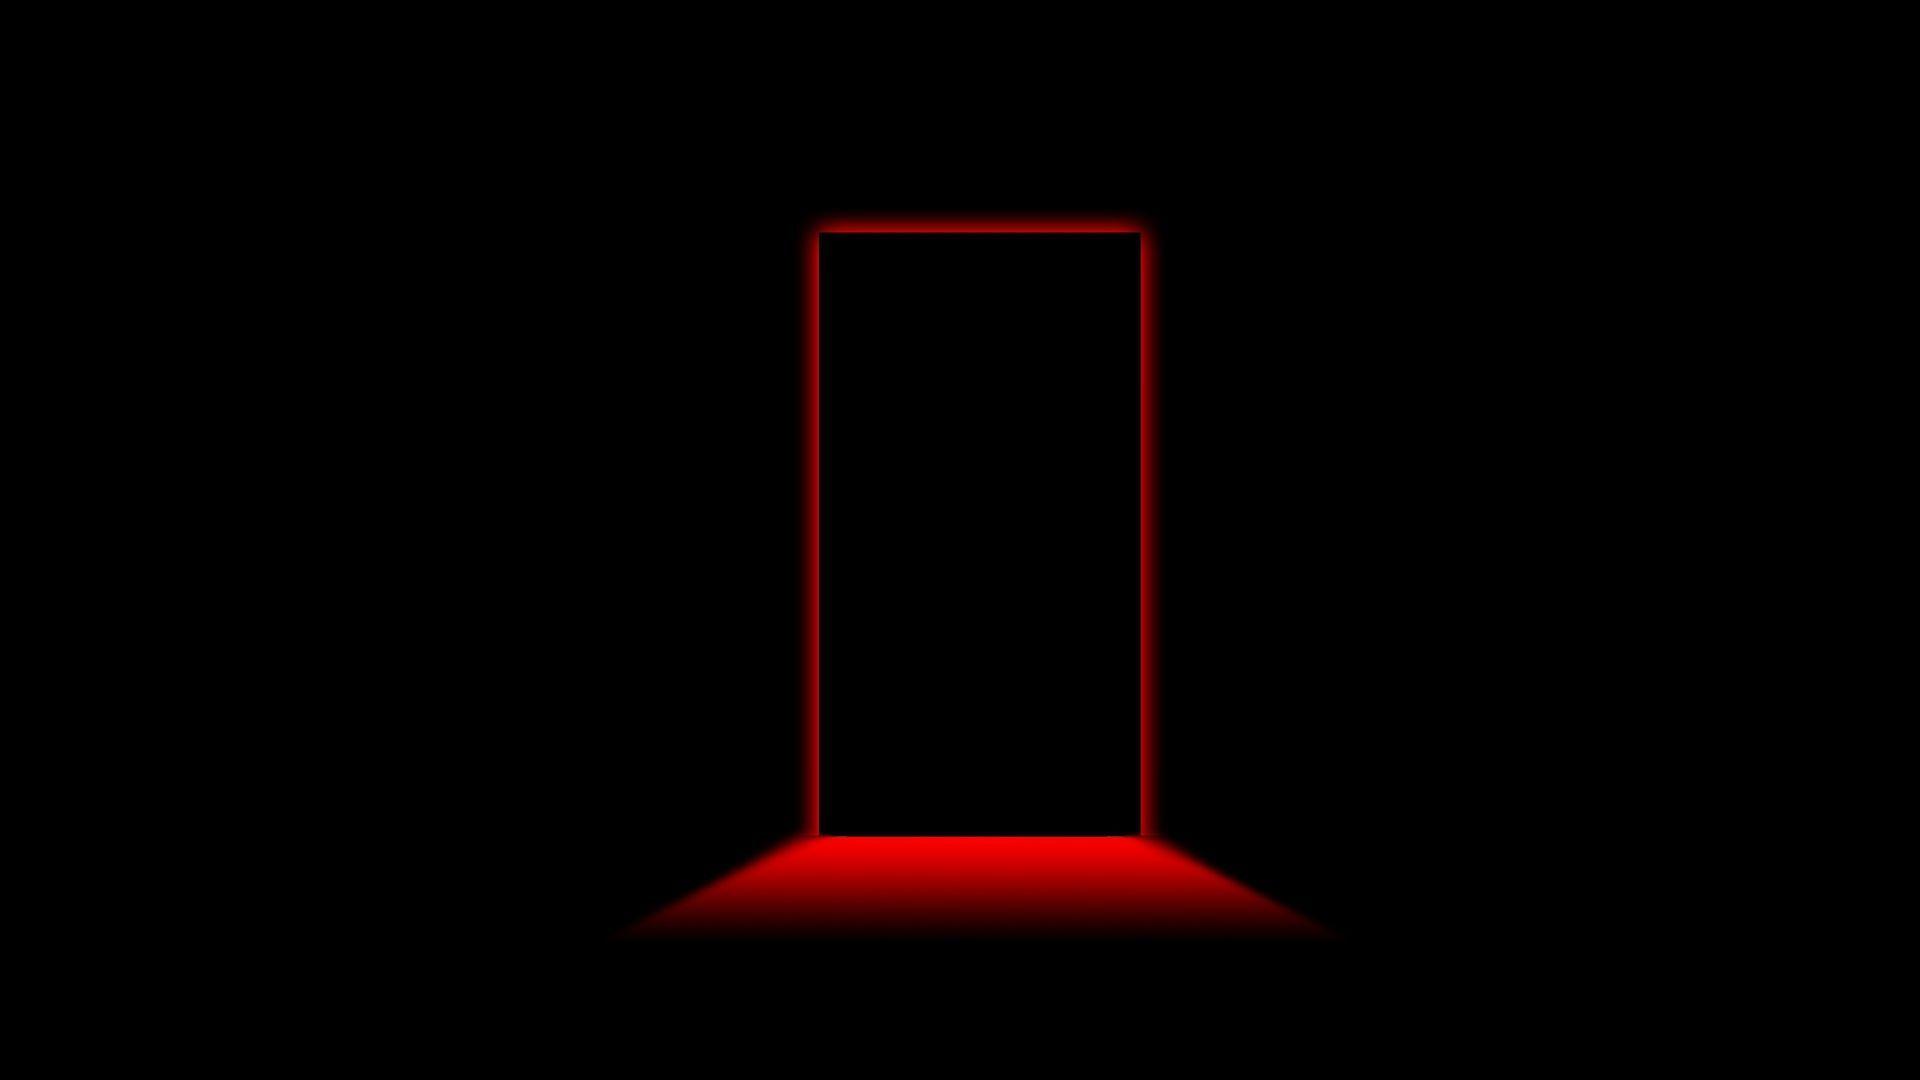 Door light shadow black red wallpaper mixhd wallpaper. Chainimage